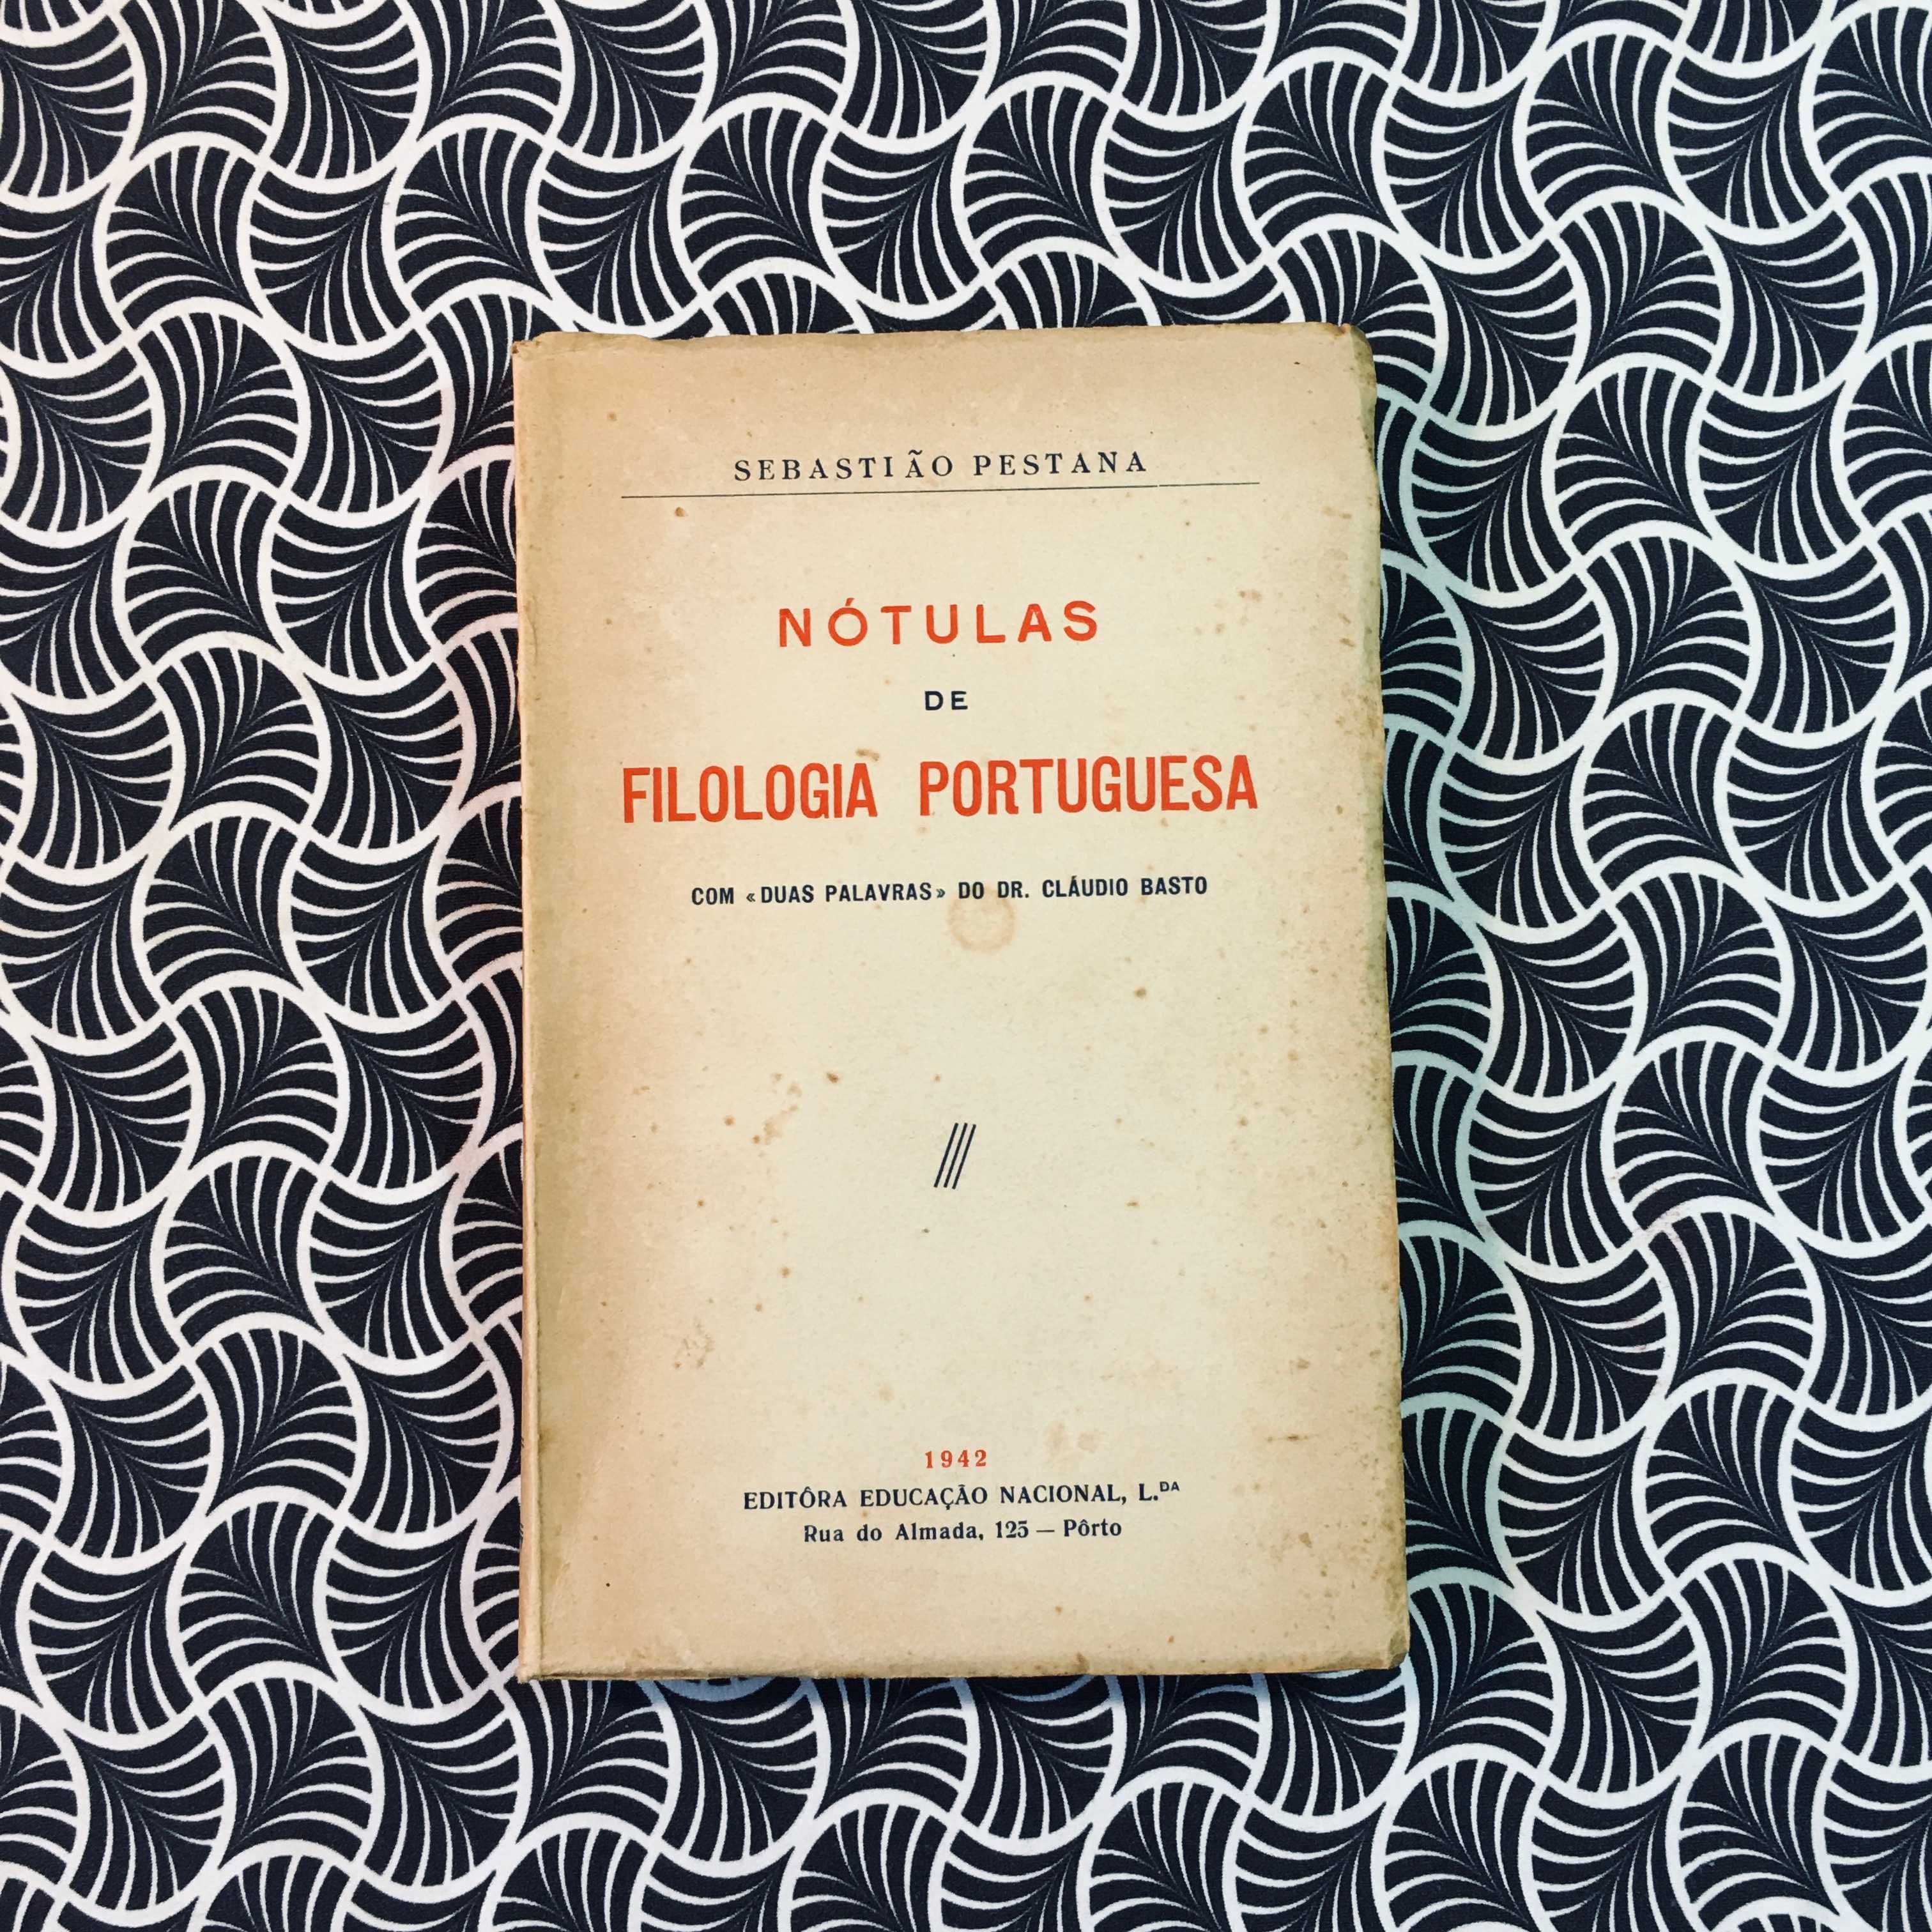 Nótulas de Filologia Portuguesa - Sebastião Pestana